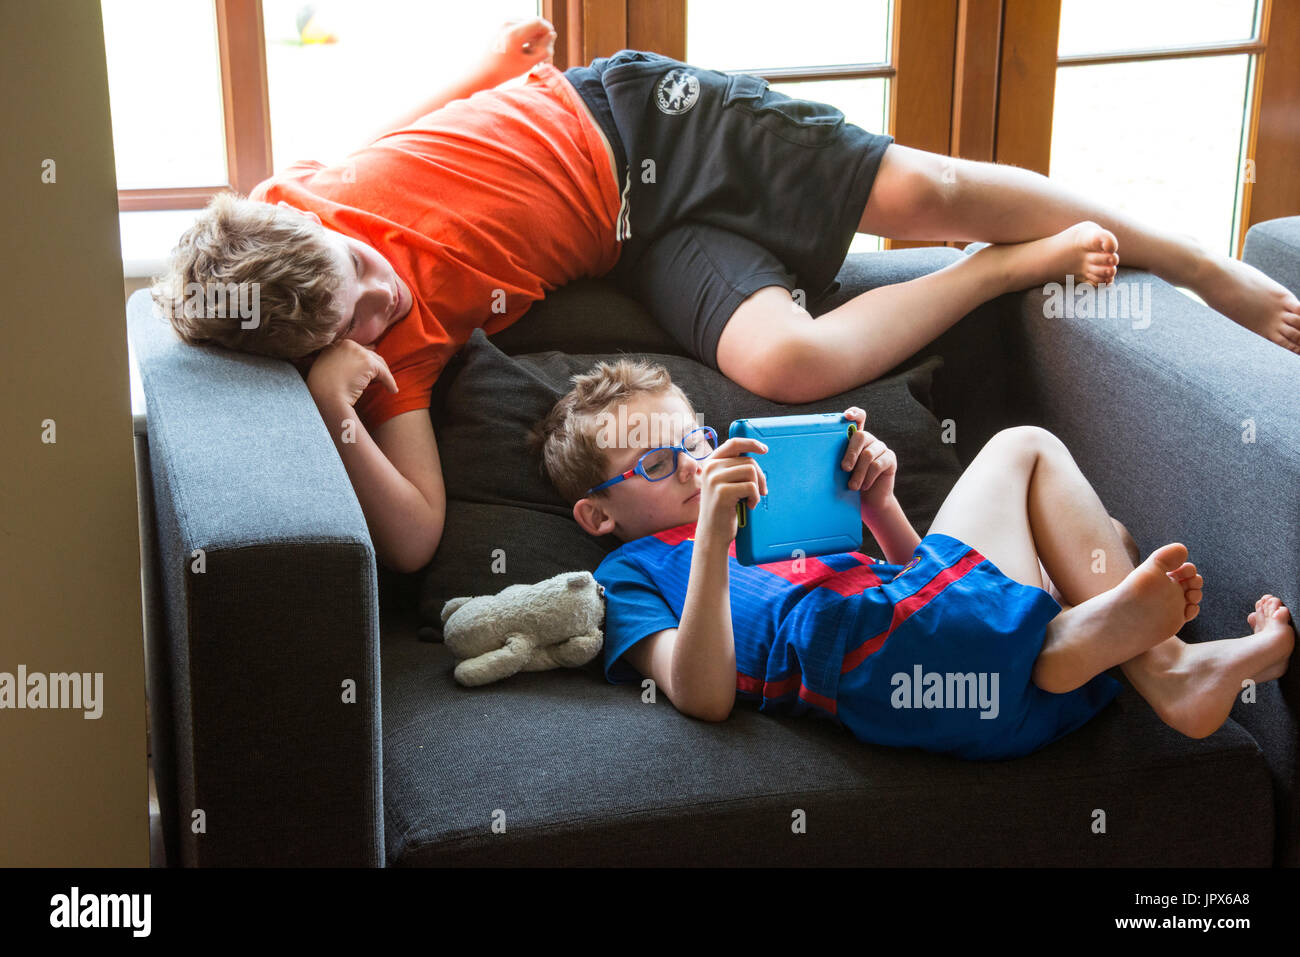 Young Boy spielen Computer-Spiel auf dem iPad mit anderen Jungen Ansehen Stockfoto